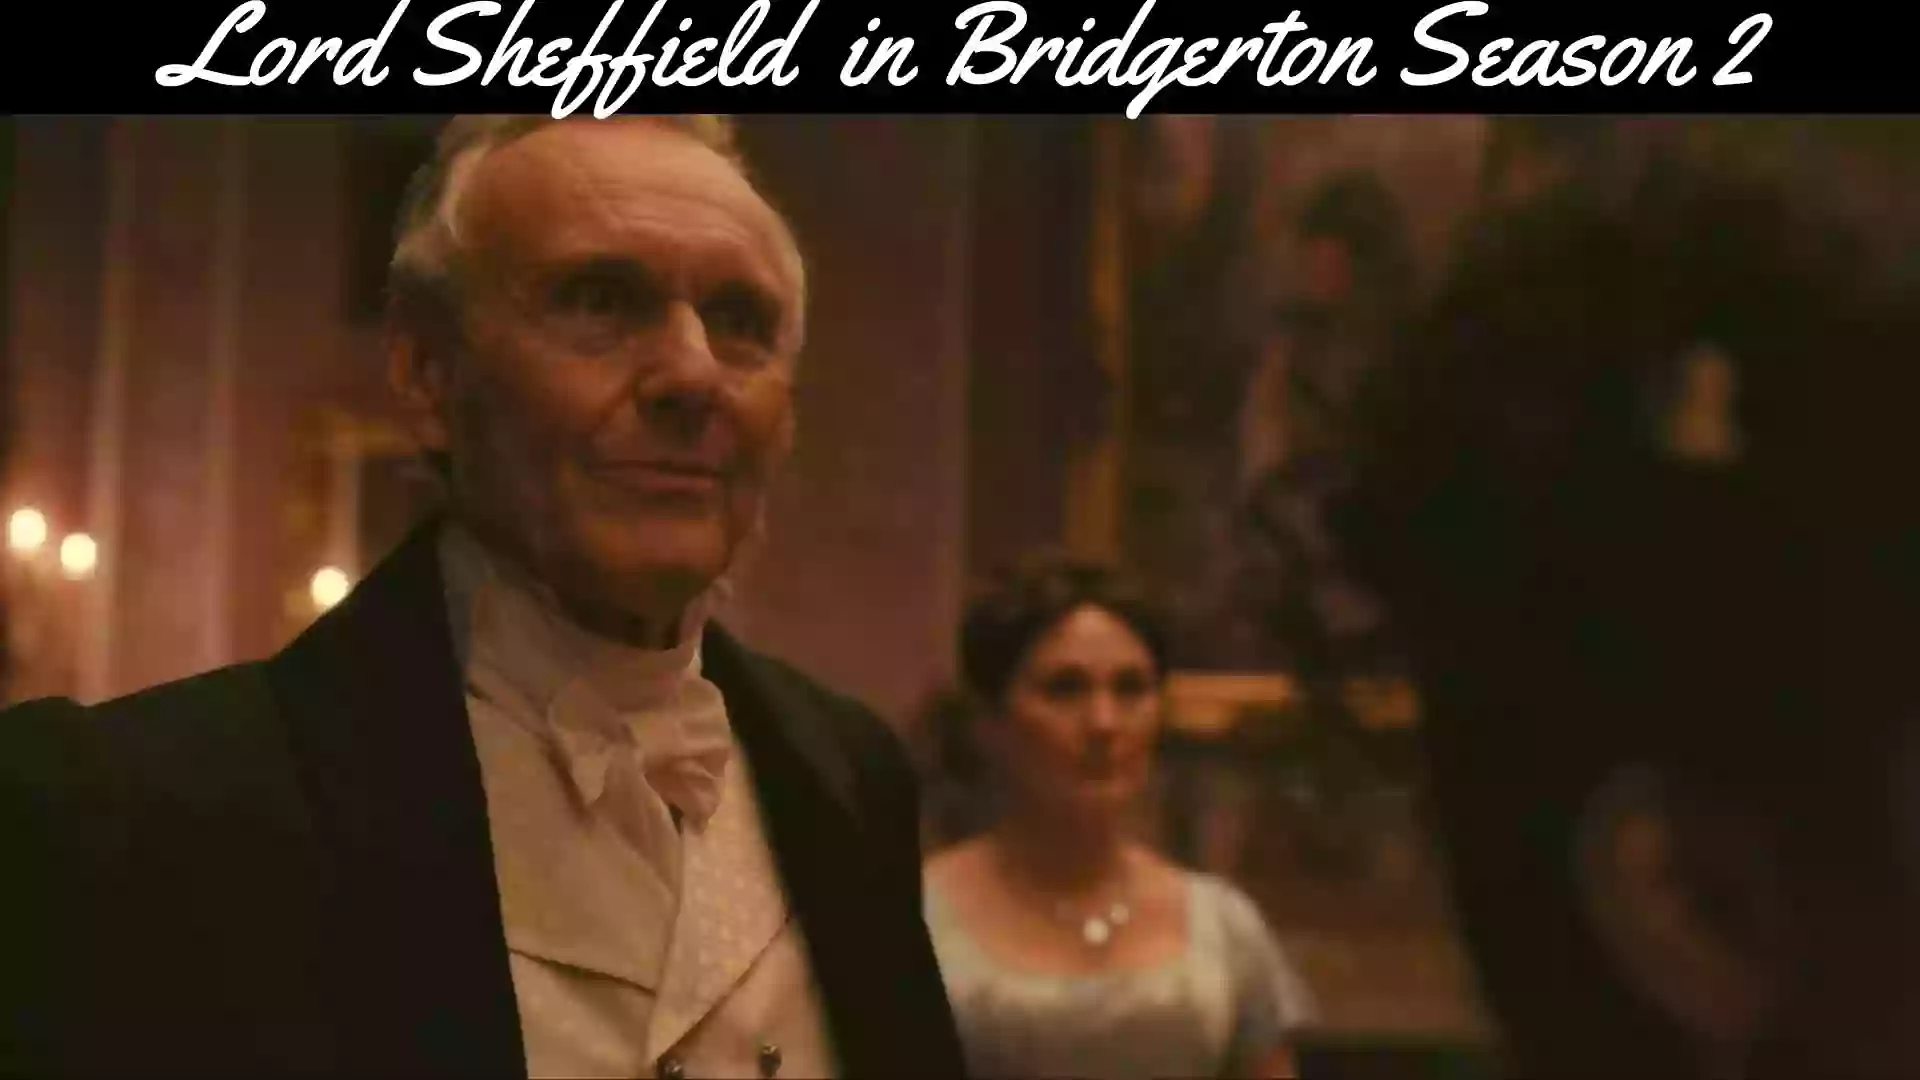 Lord Sheffield Bridgerton | Lord Sheffield in Bridgerton 2